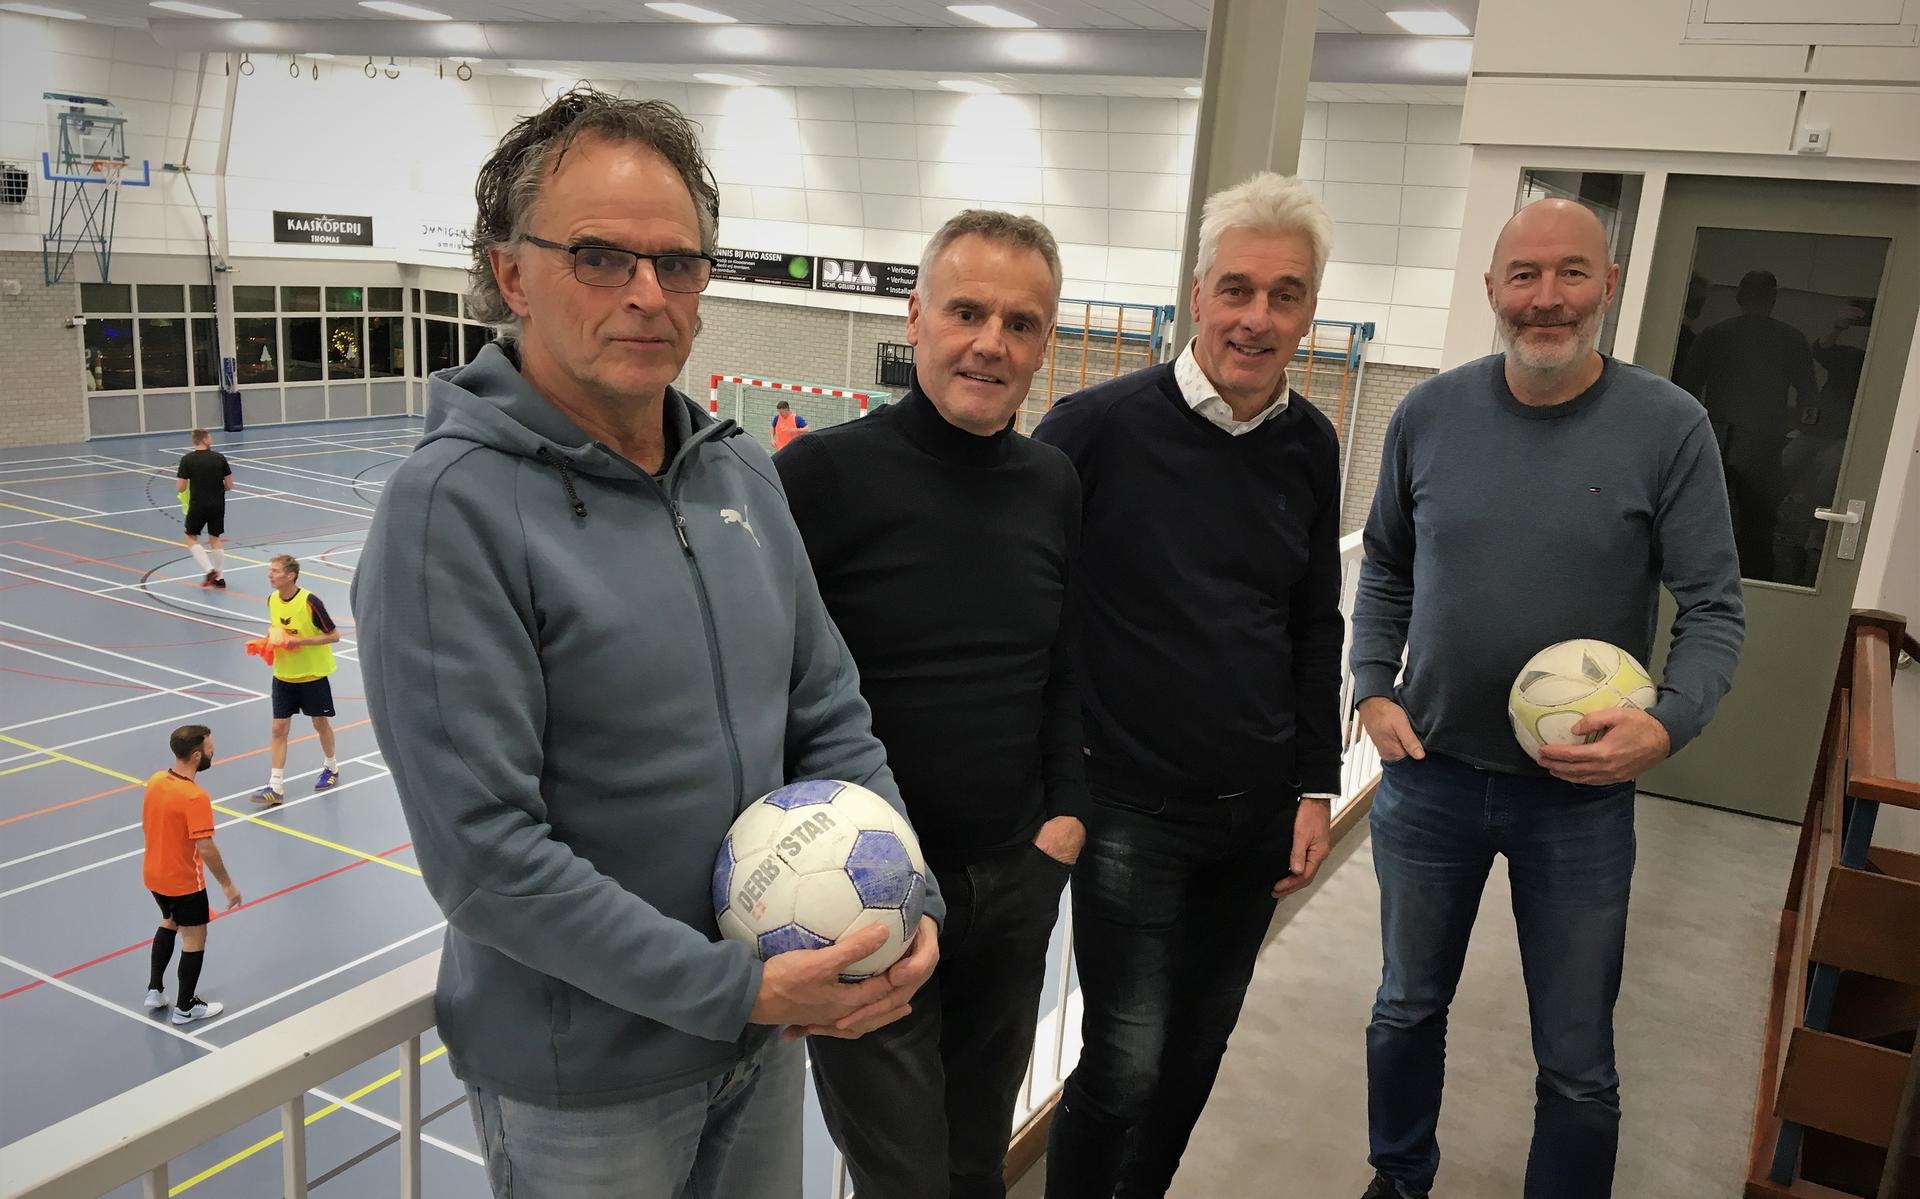 Roel Wormmeester, Egge Knol, Bert Meertens en John Dittrich in de Marsdijkhal. 